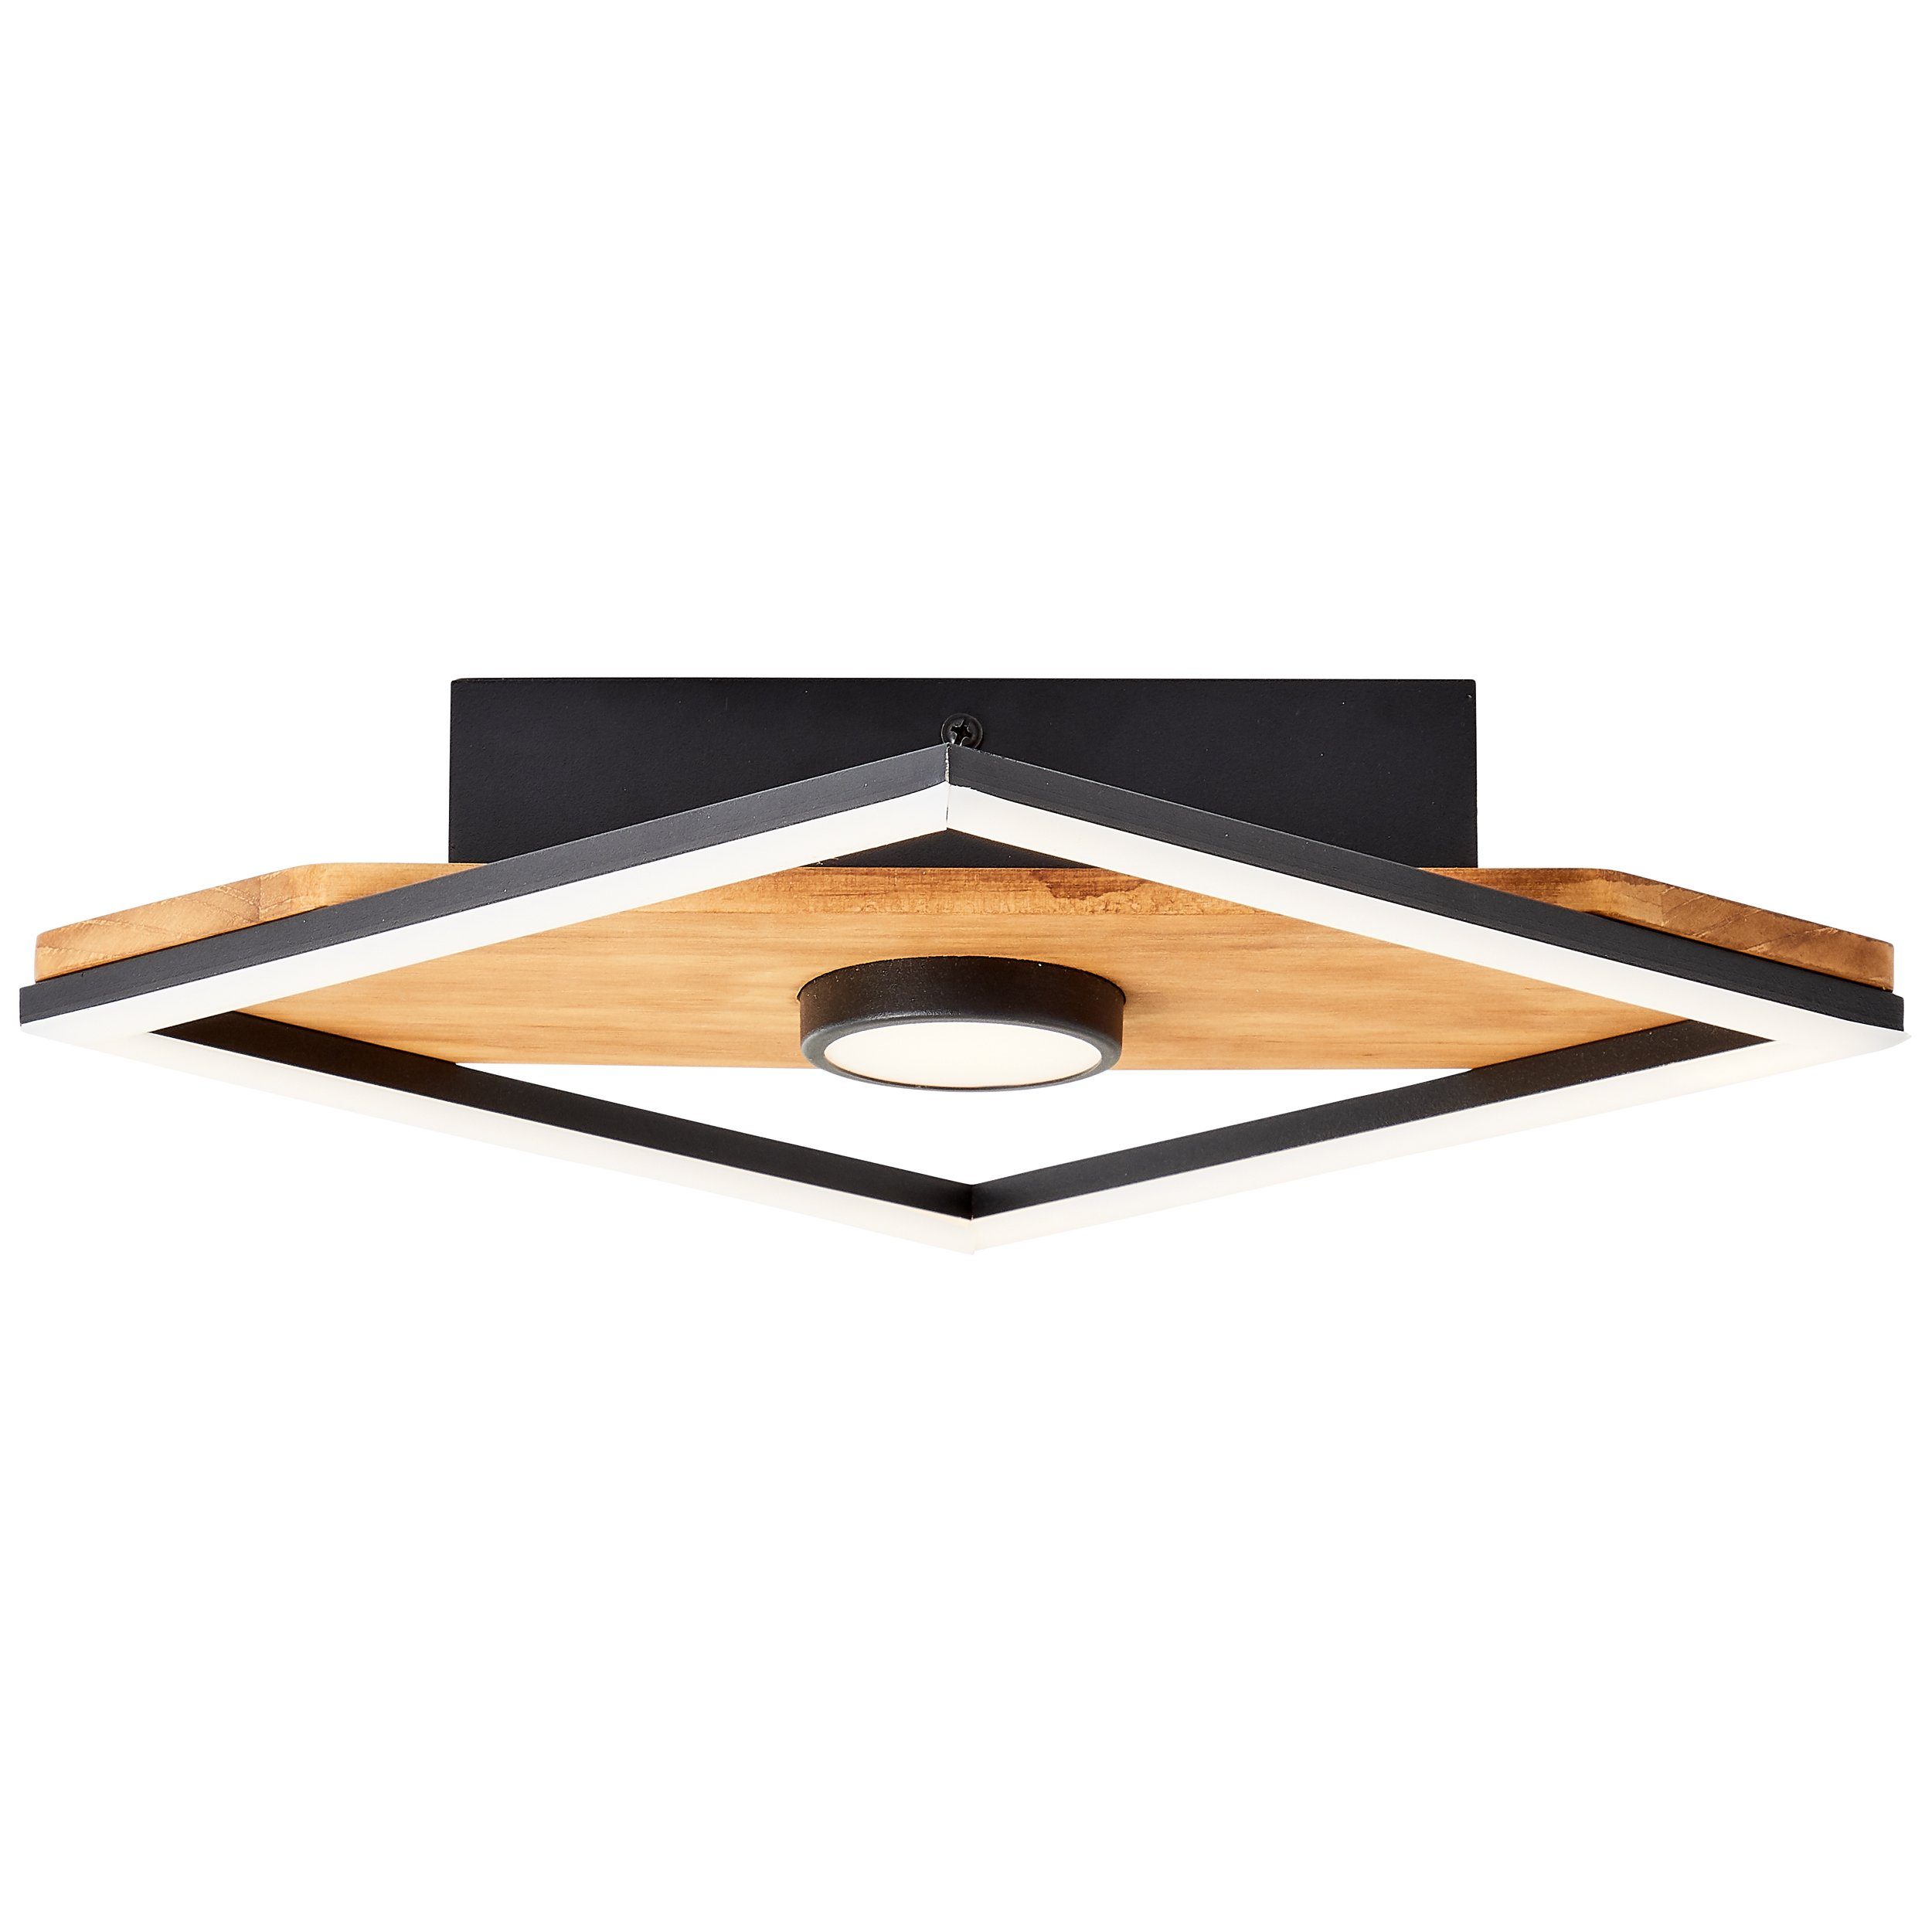 LED Woodbridge holz/schwarz, Deckenleuchte 25x25cm Woodbridge, Brilliant Holz/Metall/Kunstst Deckenleuchte